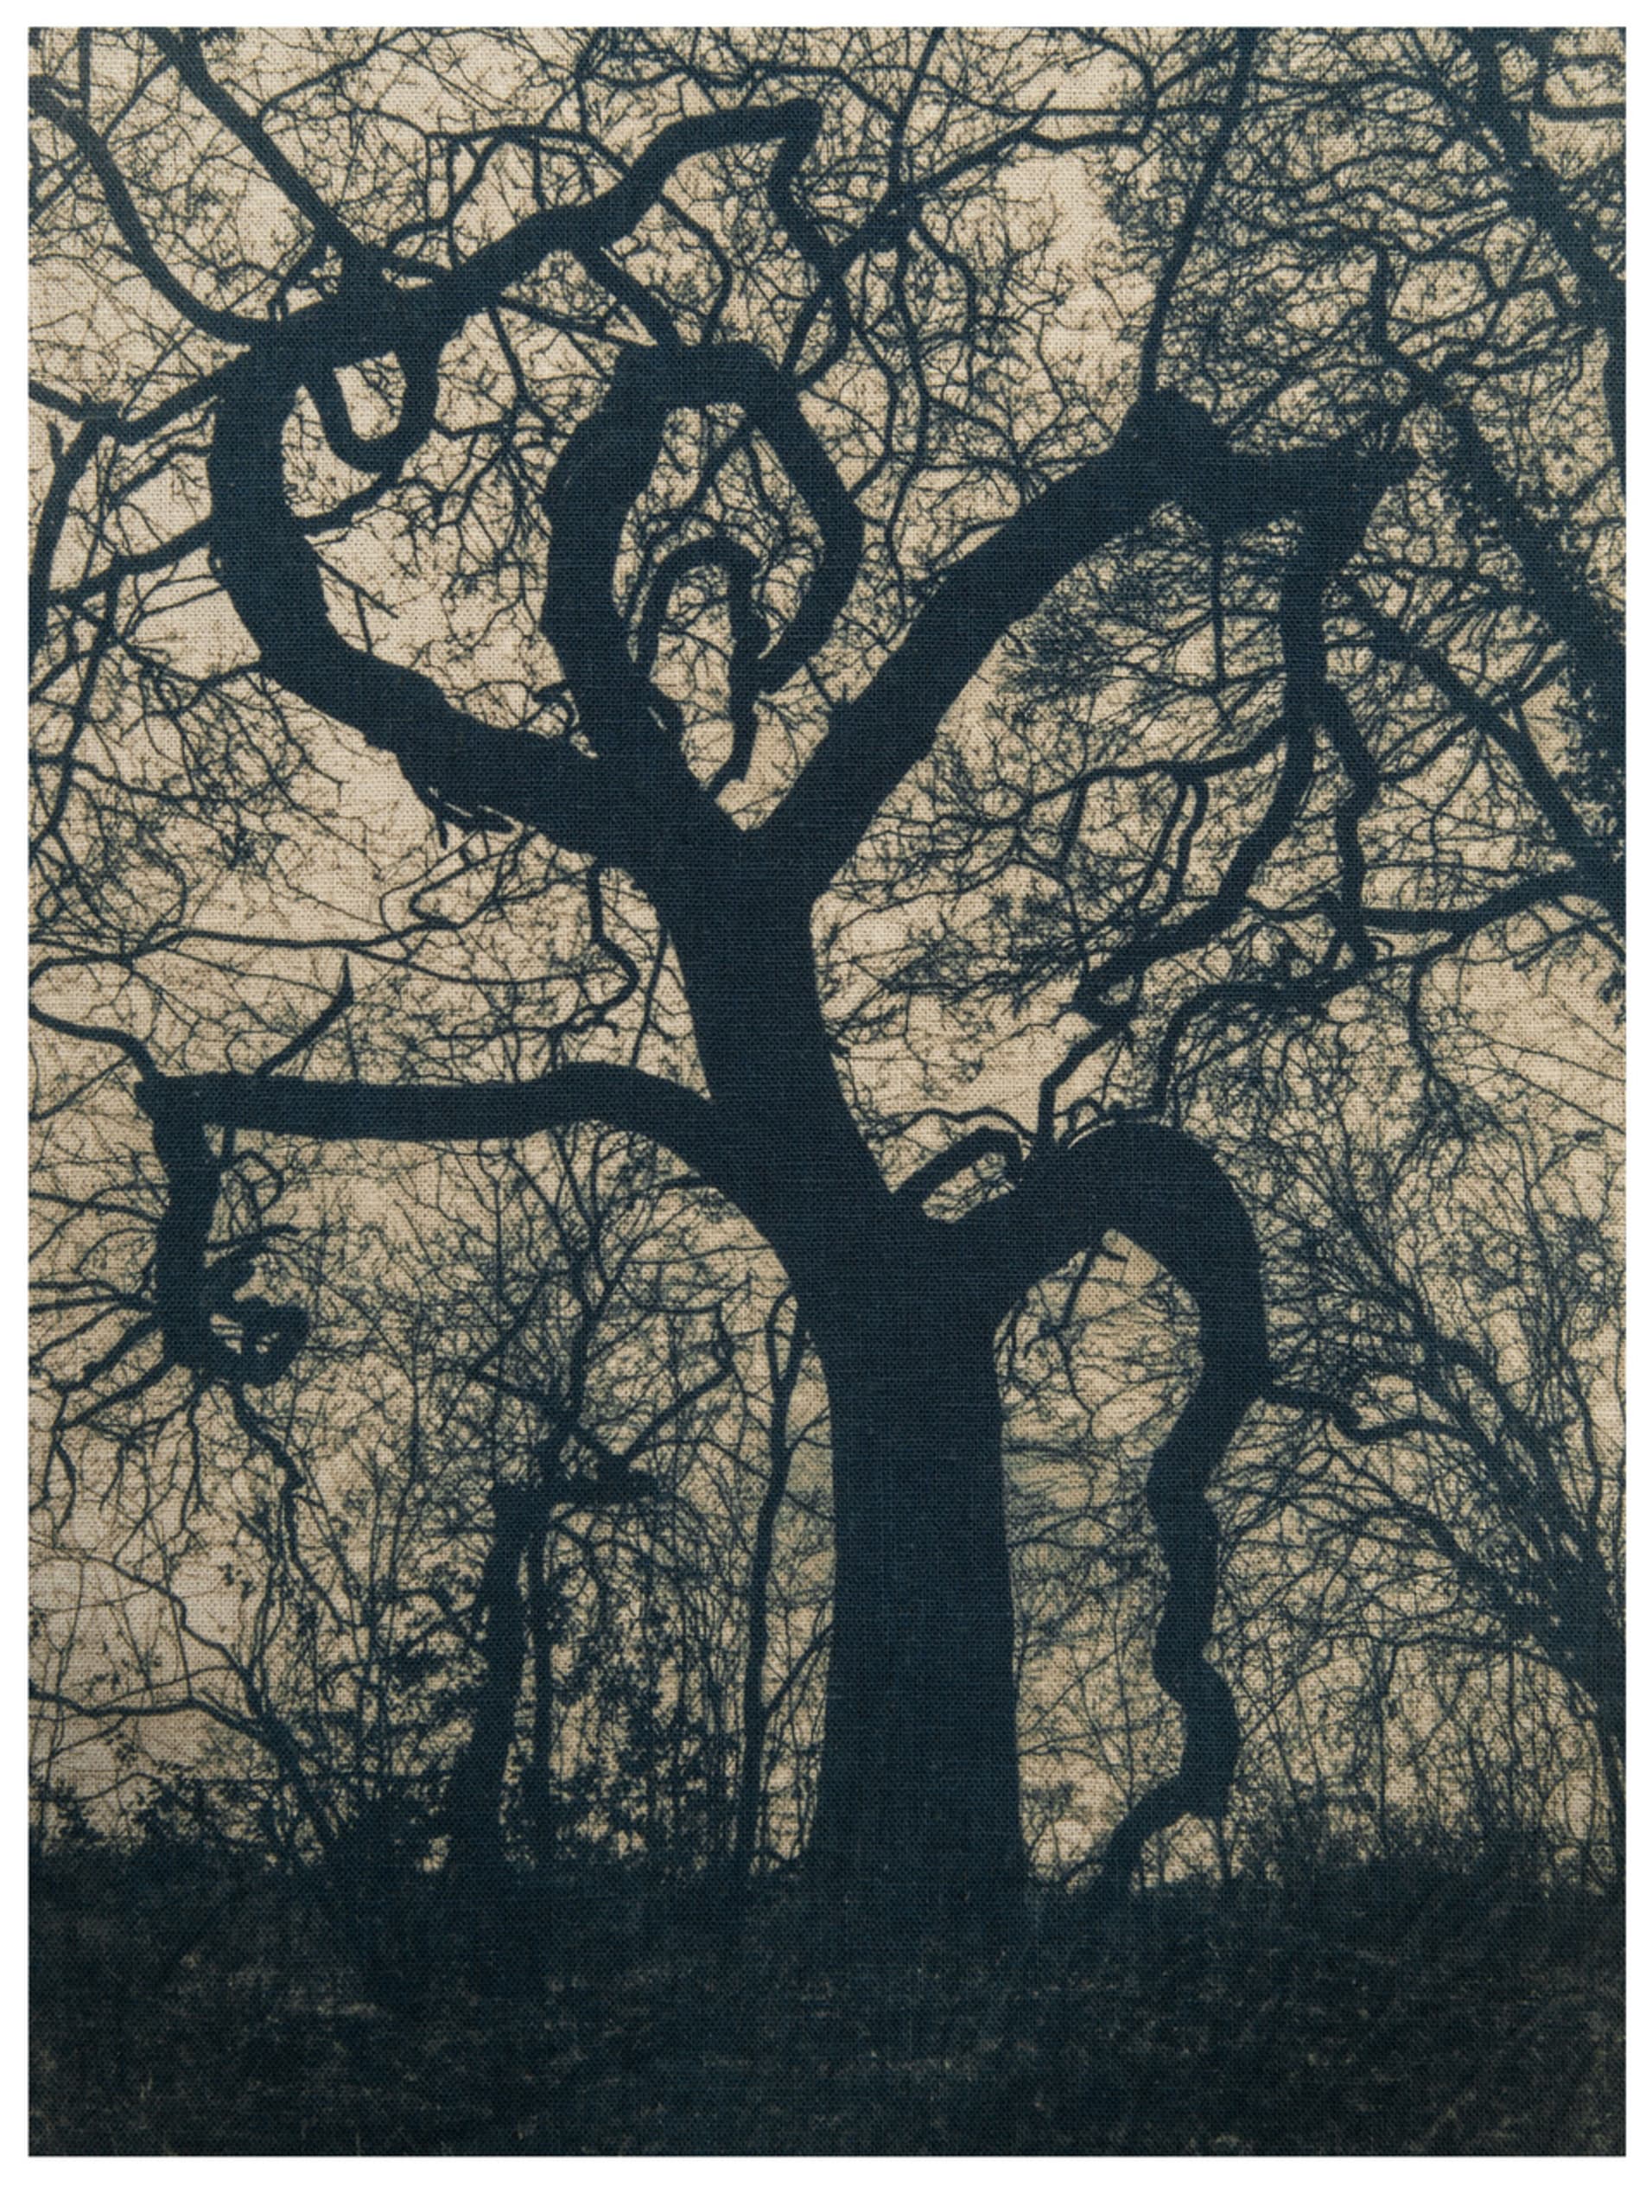 Silhouette of winter oak tree